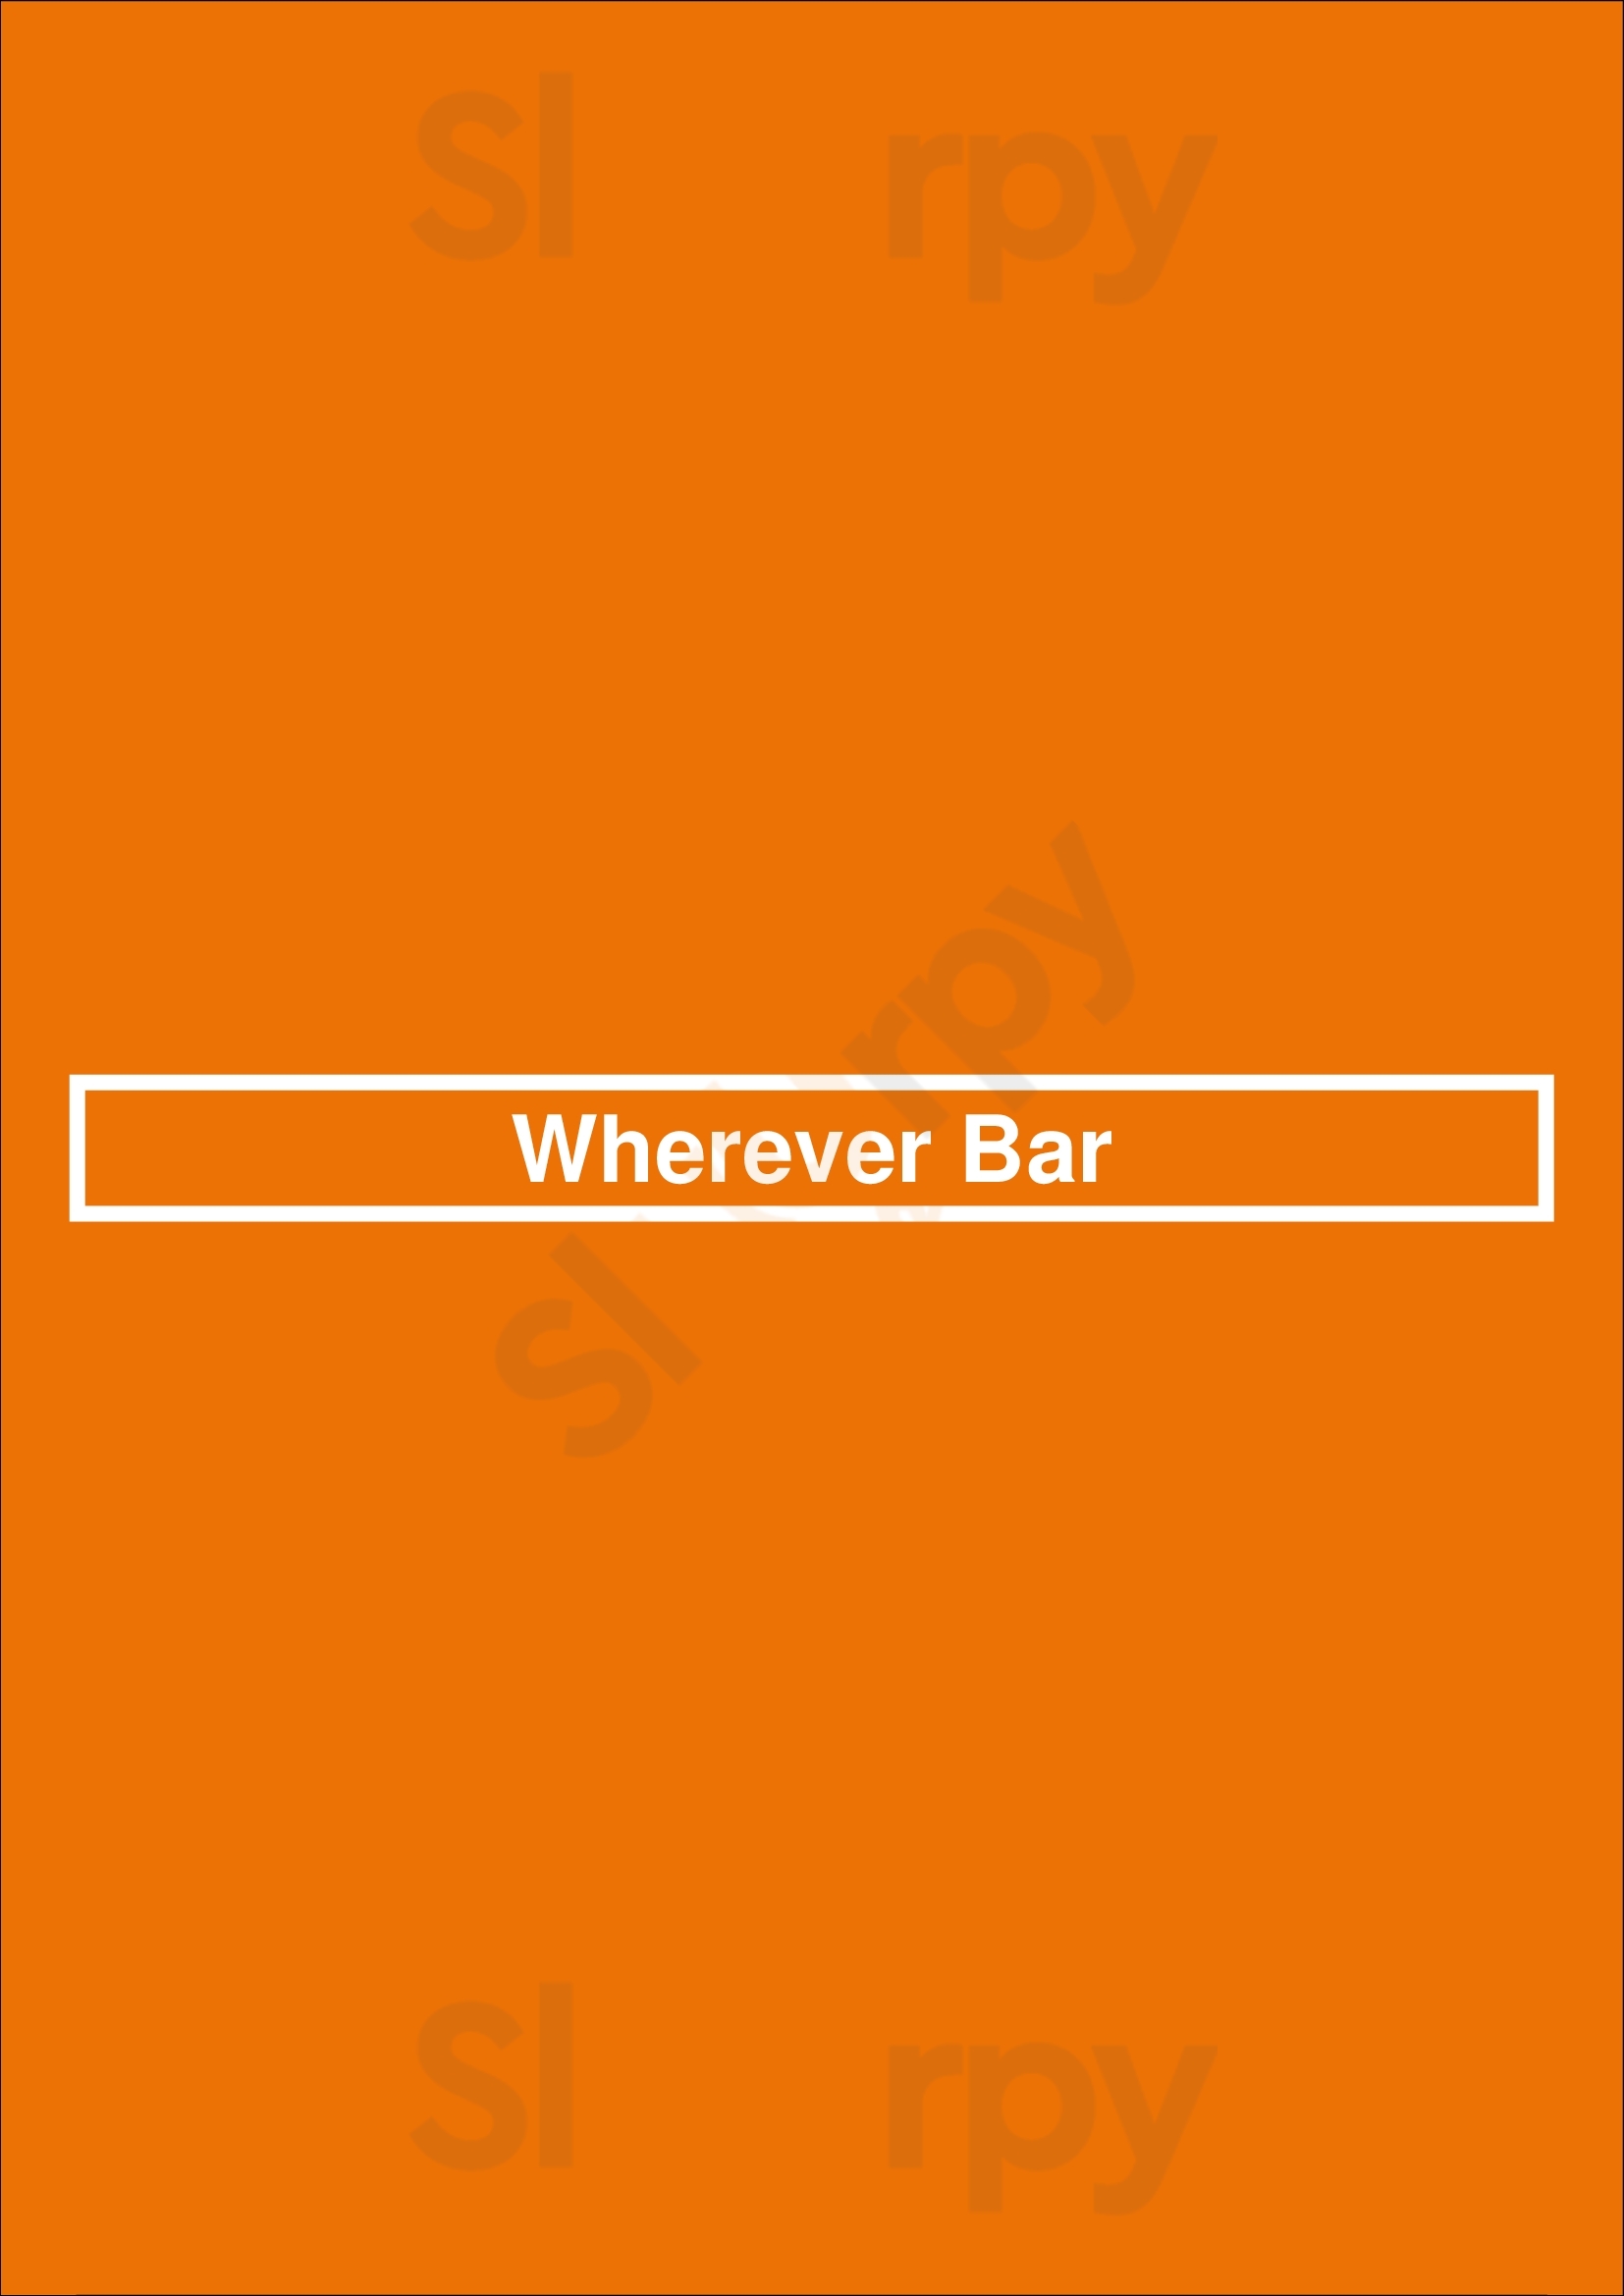 Wherever Bar Buenos Aires Menu - 1